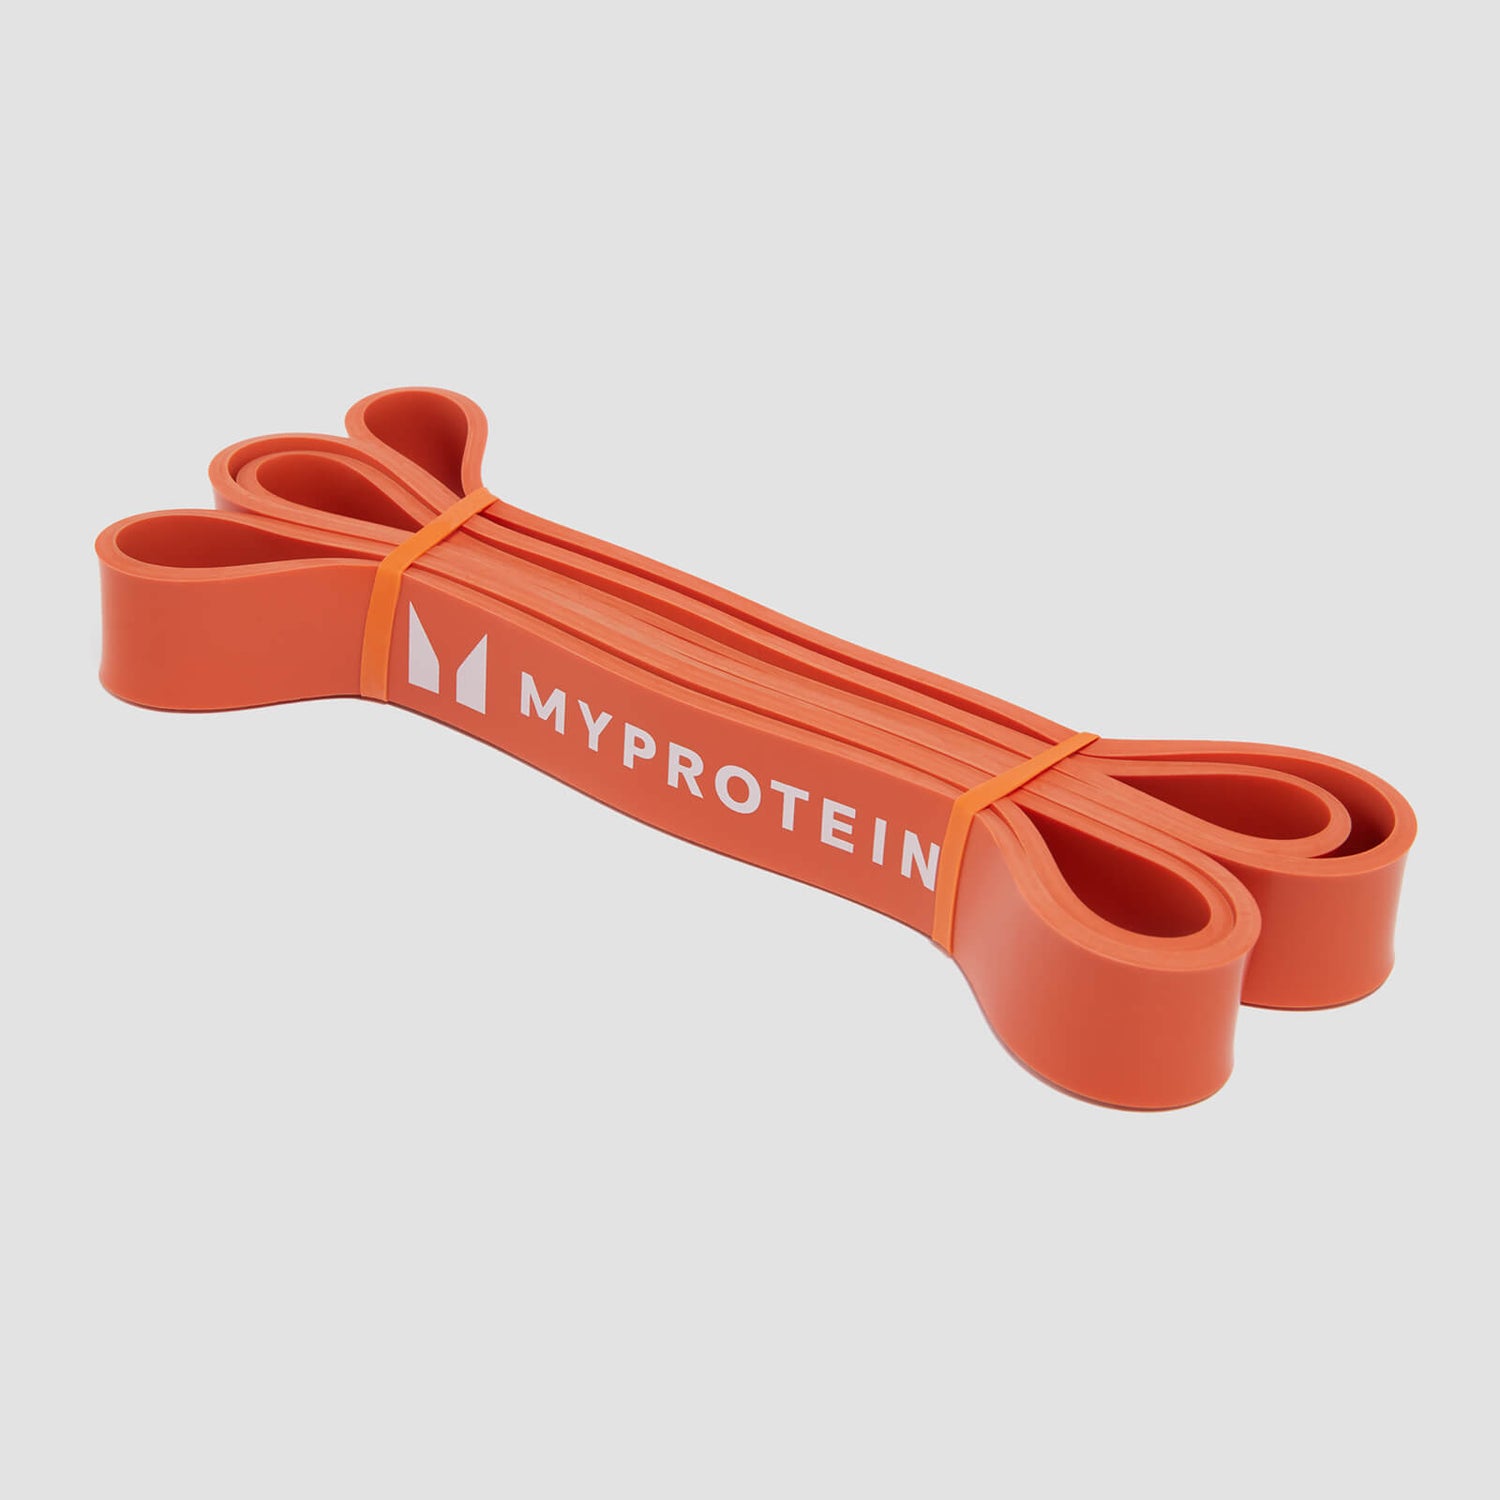 Myprotein weerstandsband - Enkelvoudige band (11-36 kg) - Gebrand oranje